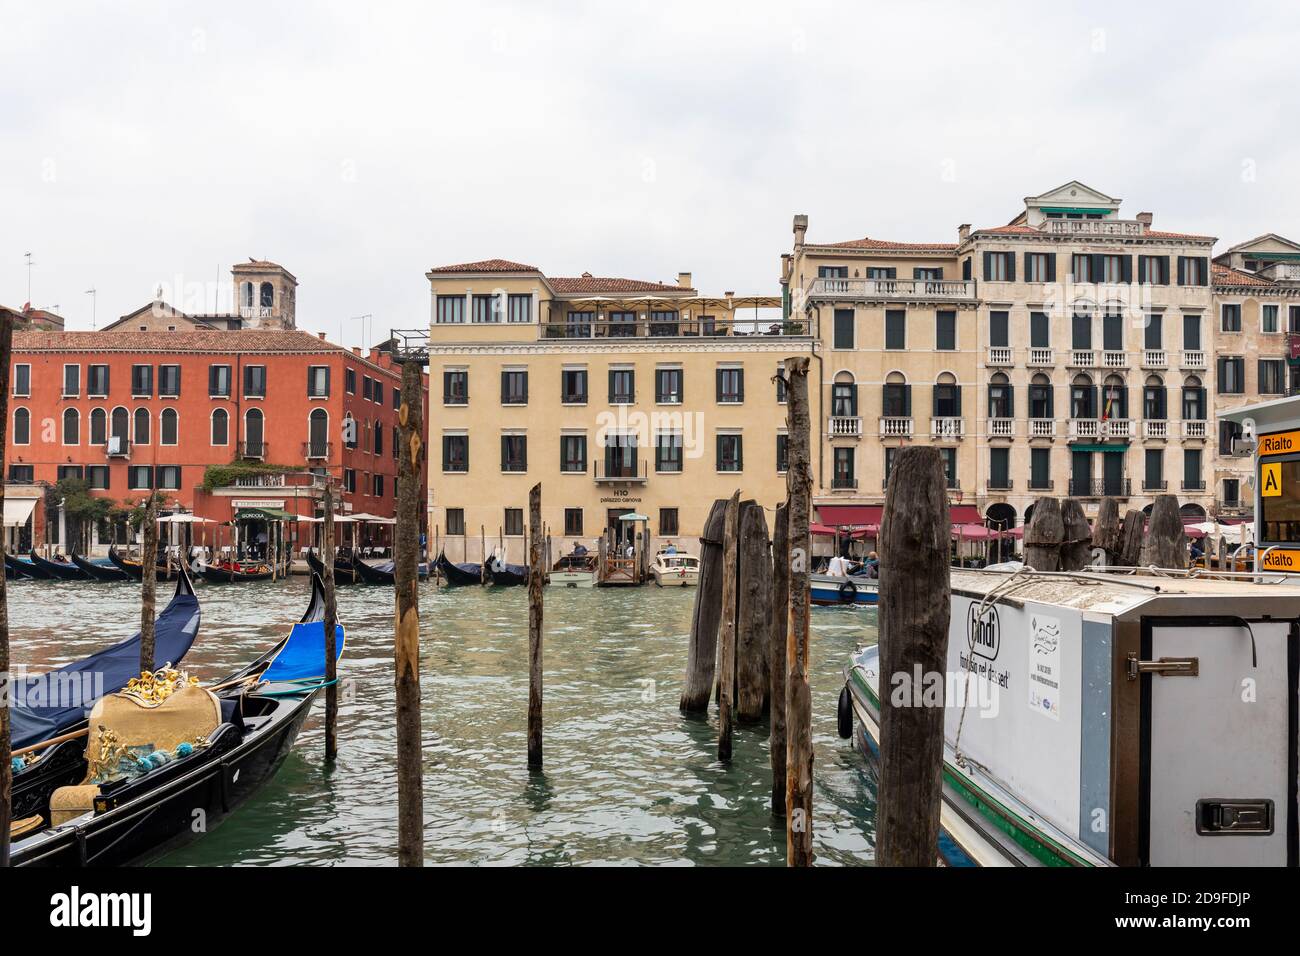 The H10 Palazzo Canova Hotel across the Grand Canal, San Polo, Venice,  Italy Stock Photo - Alamy